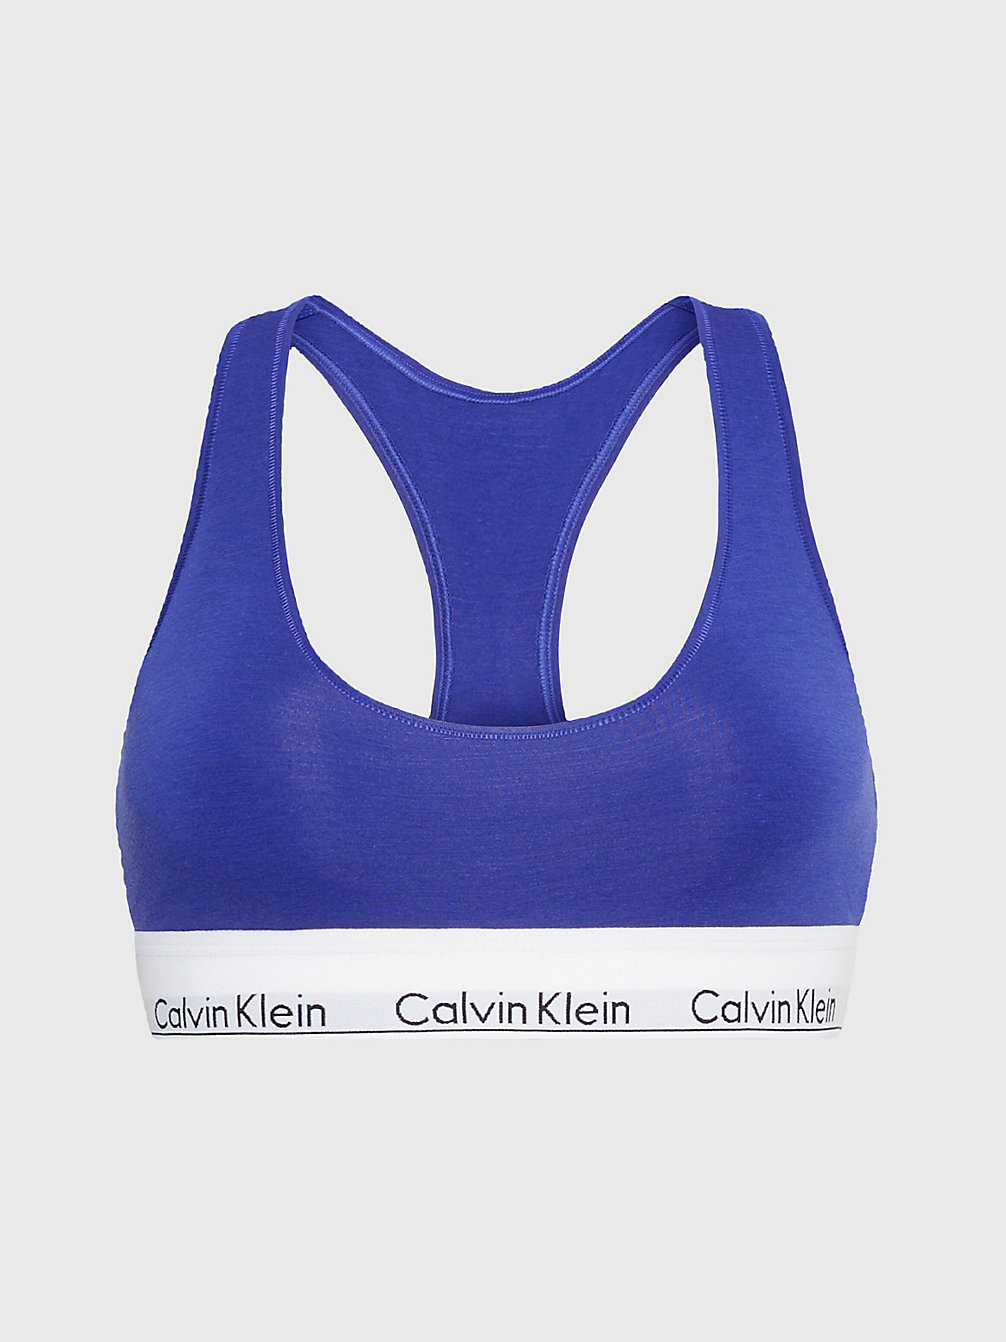 SPECTRUM BLUE Bralette - Modern Cotton undefined Damen Calvin Klein